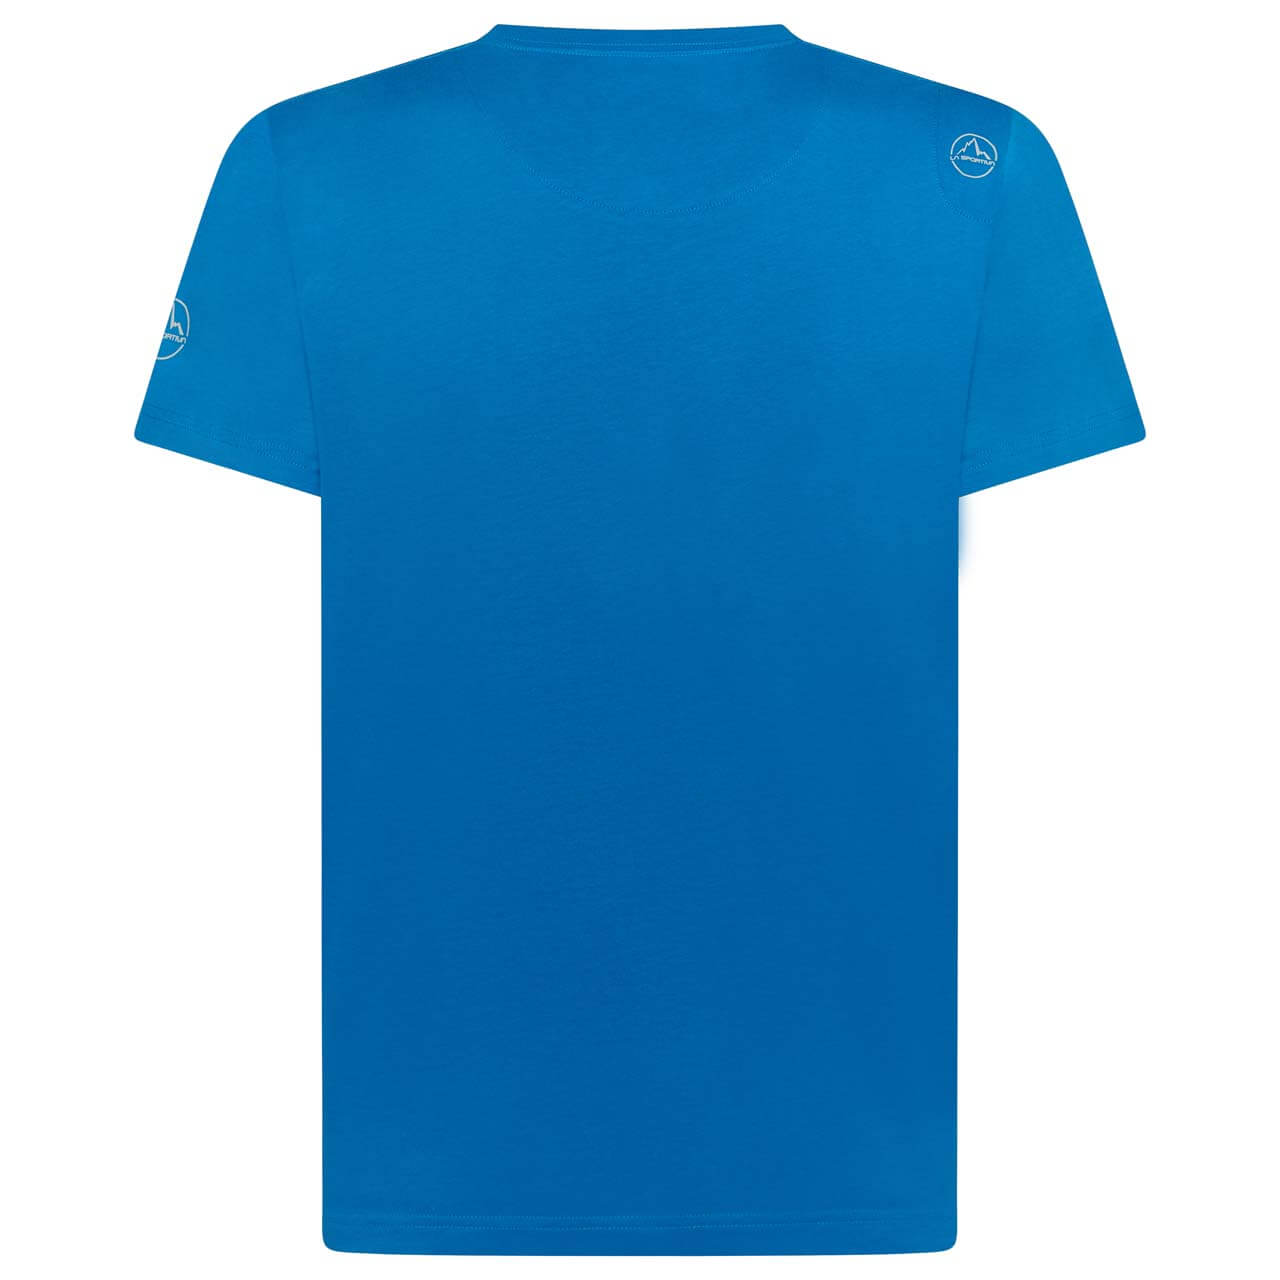 La Sportiva Breakfast T-Shirt - Neptune, XL